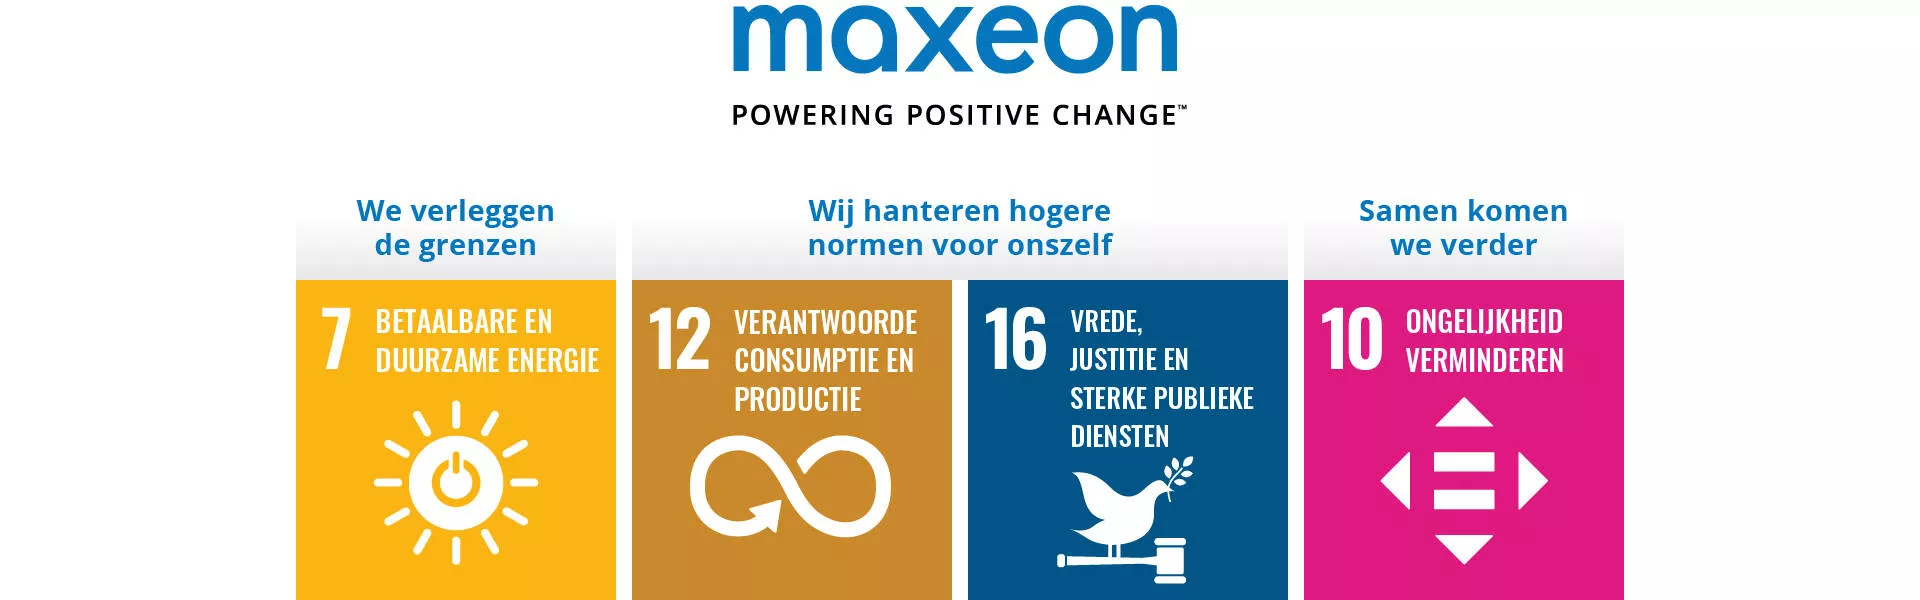 Maxeon SDG 4 goals NL